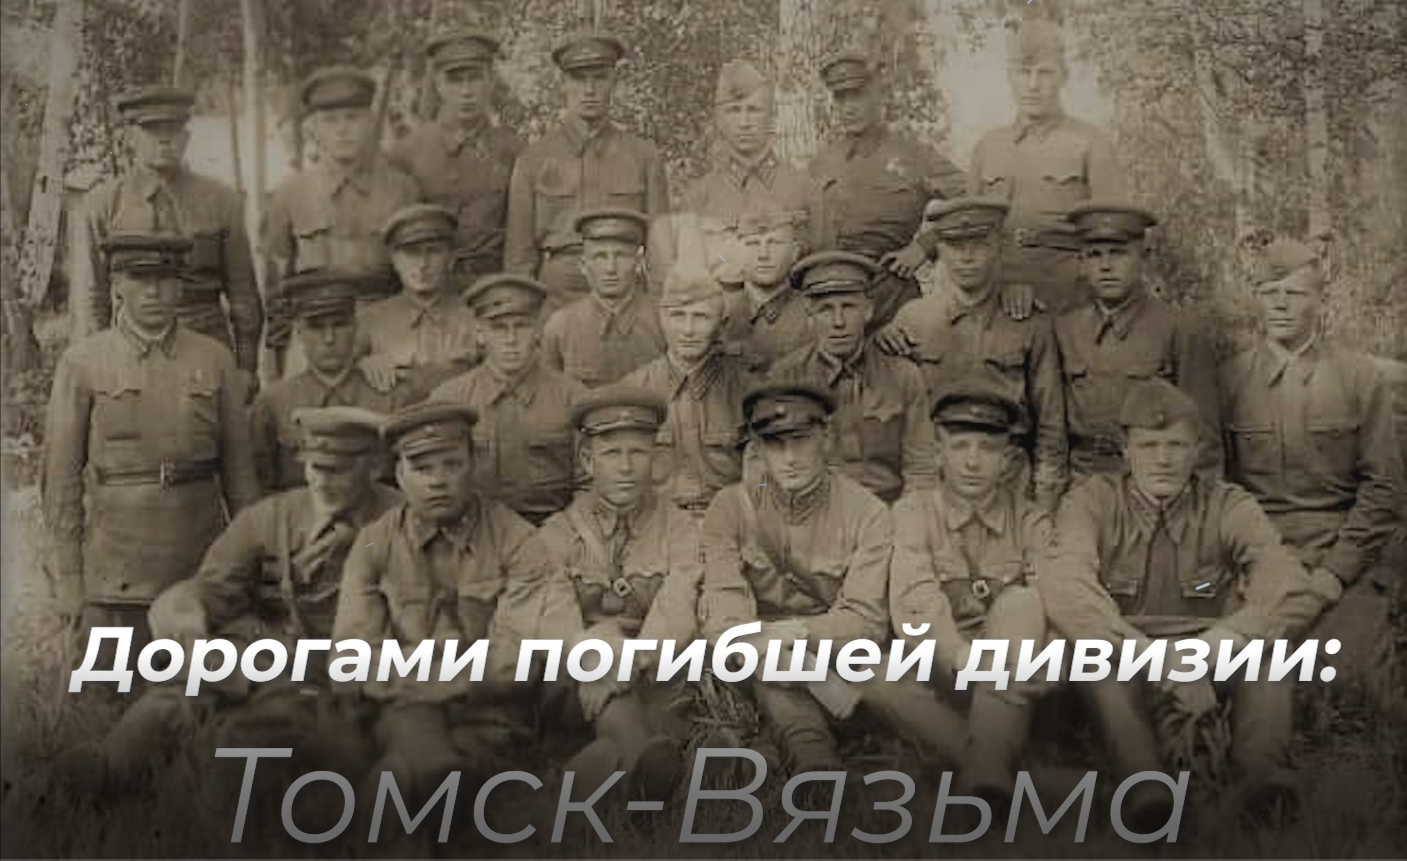 ​25 октября 2021г. состоится премьера фильма «Дорогами погибшей дивизии: Томск-Вязьма».